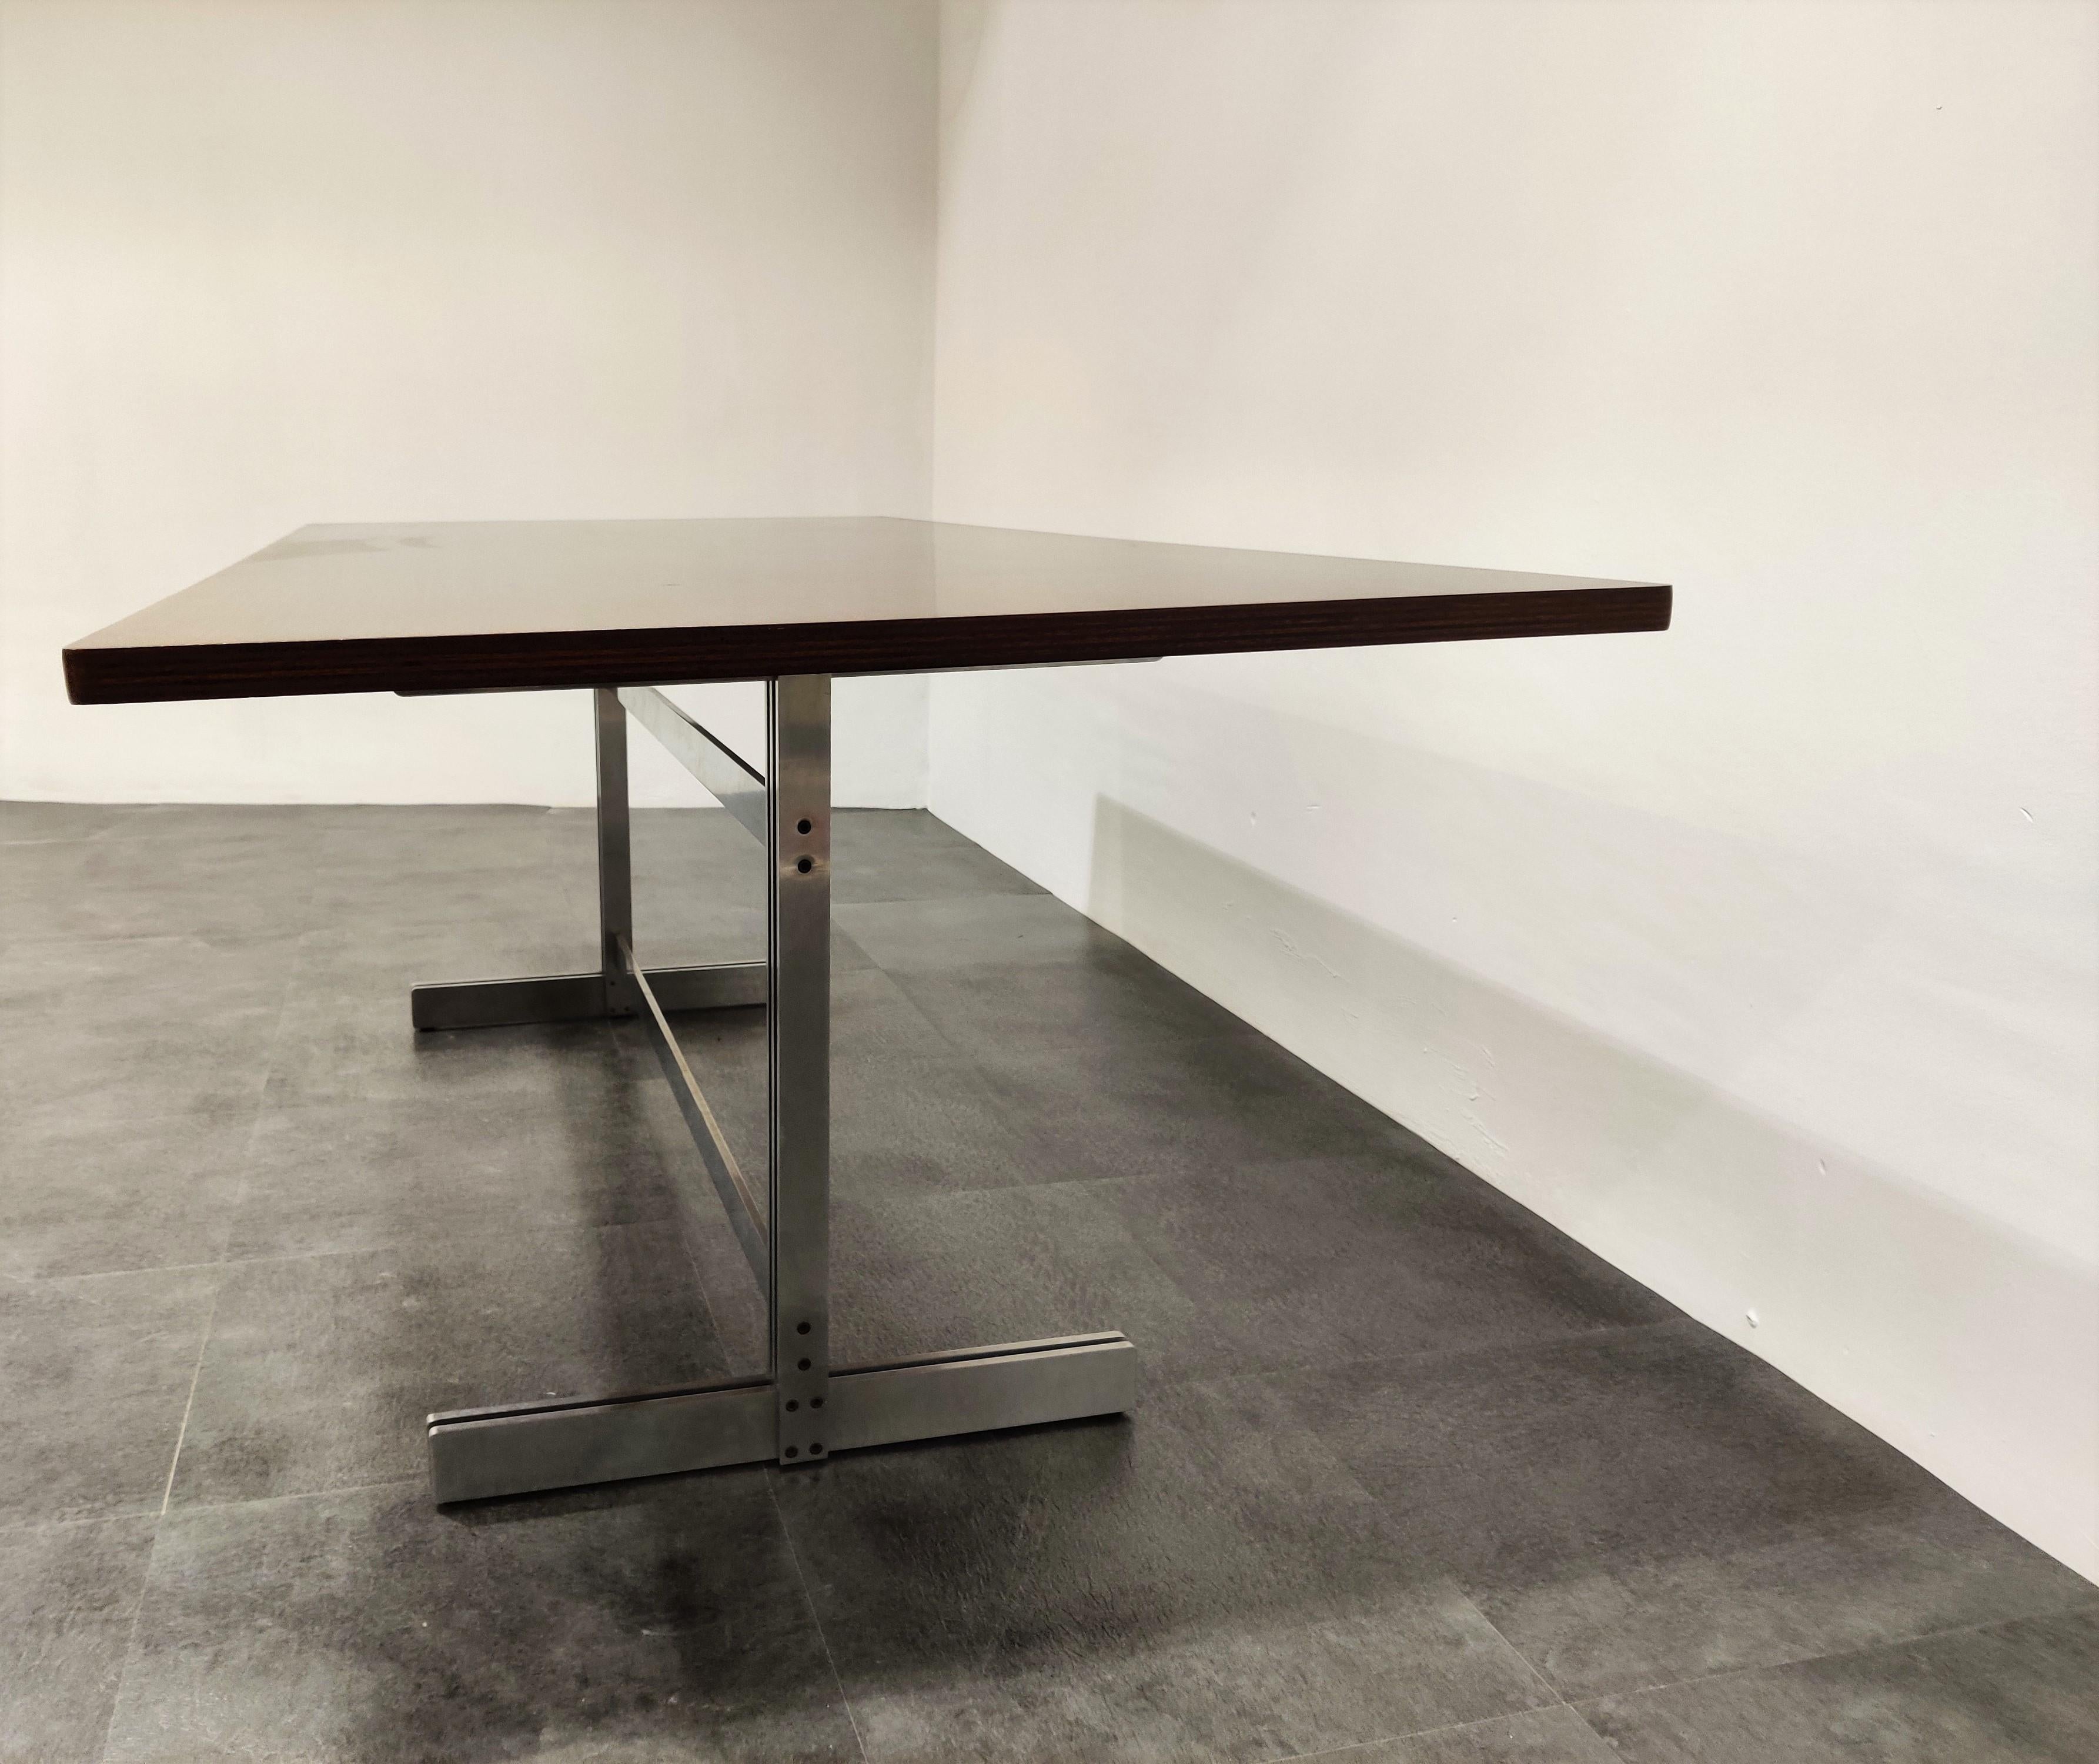 Exklusiver und zeitlos gestalteter Esstisch von Jules Wabbes für Mobilier Universel.

Dieser Tisch hat ein wunderschönes modernistisches Design und verfügt über eine vollständig restaurierte Holzplatte, die auf einem Stahlgestell montiert